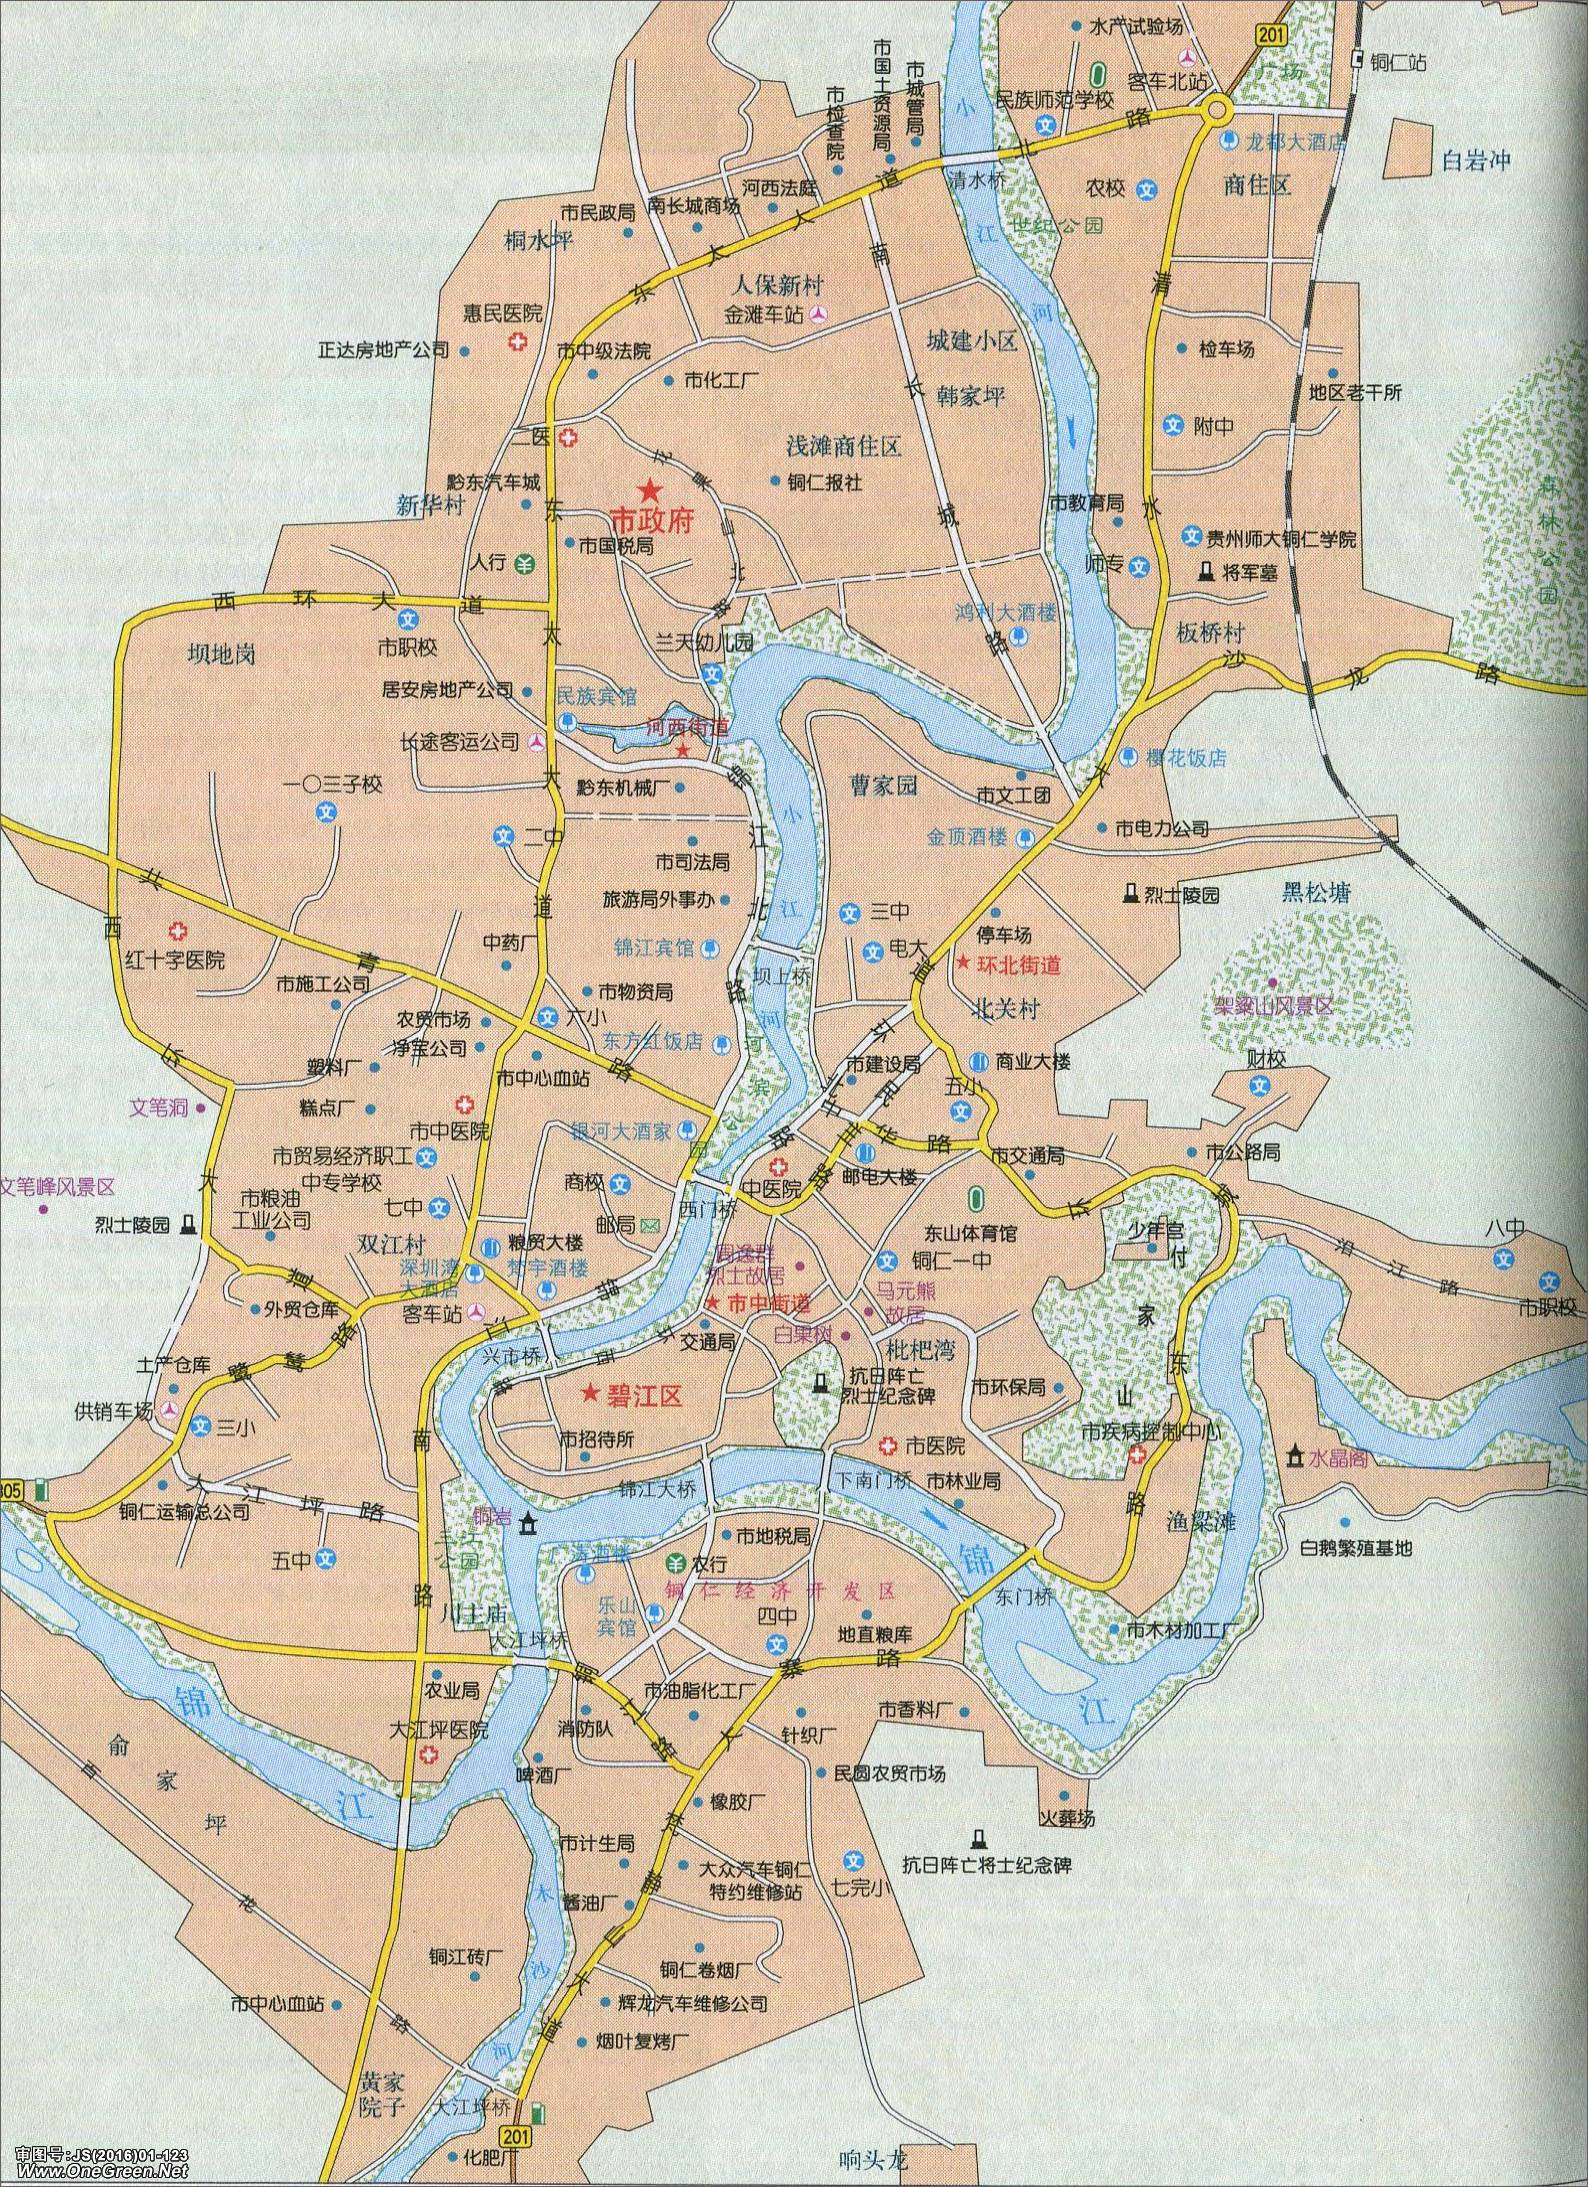 >> 铜仁市城区地图                  相关链接:贵阳  安顺  遵义  六图片